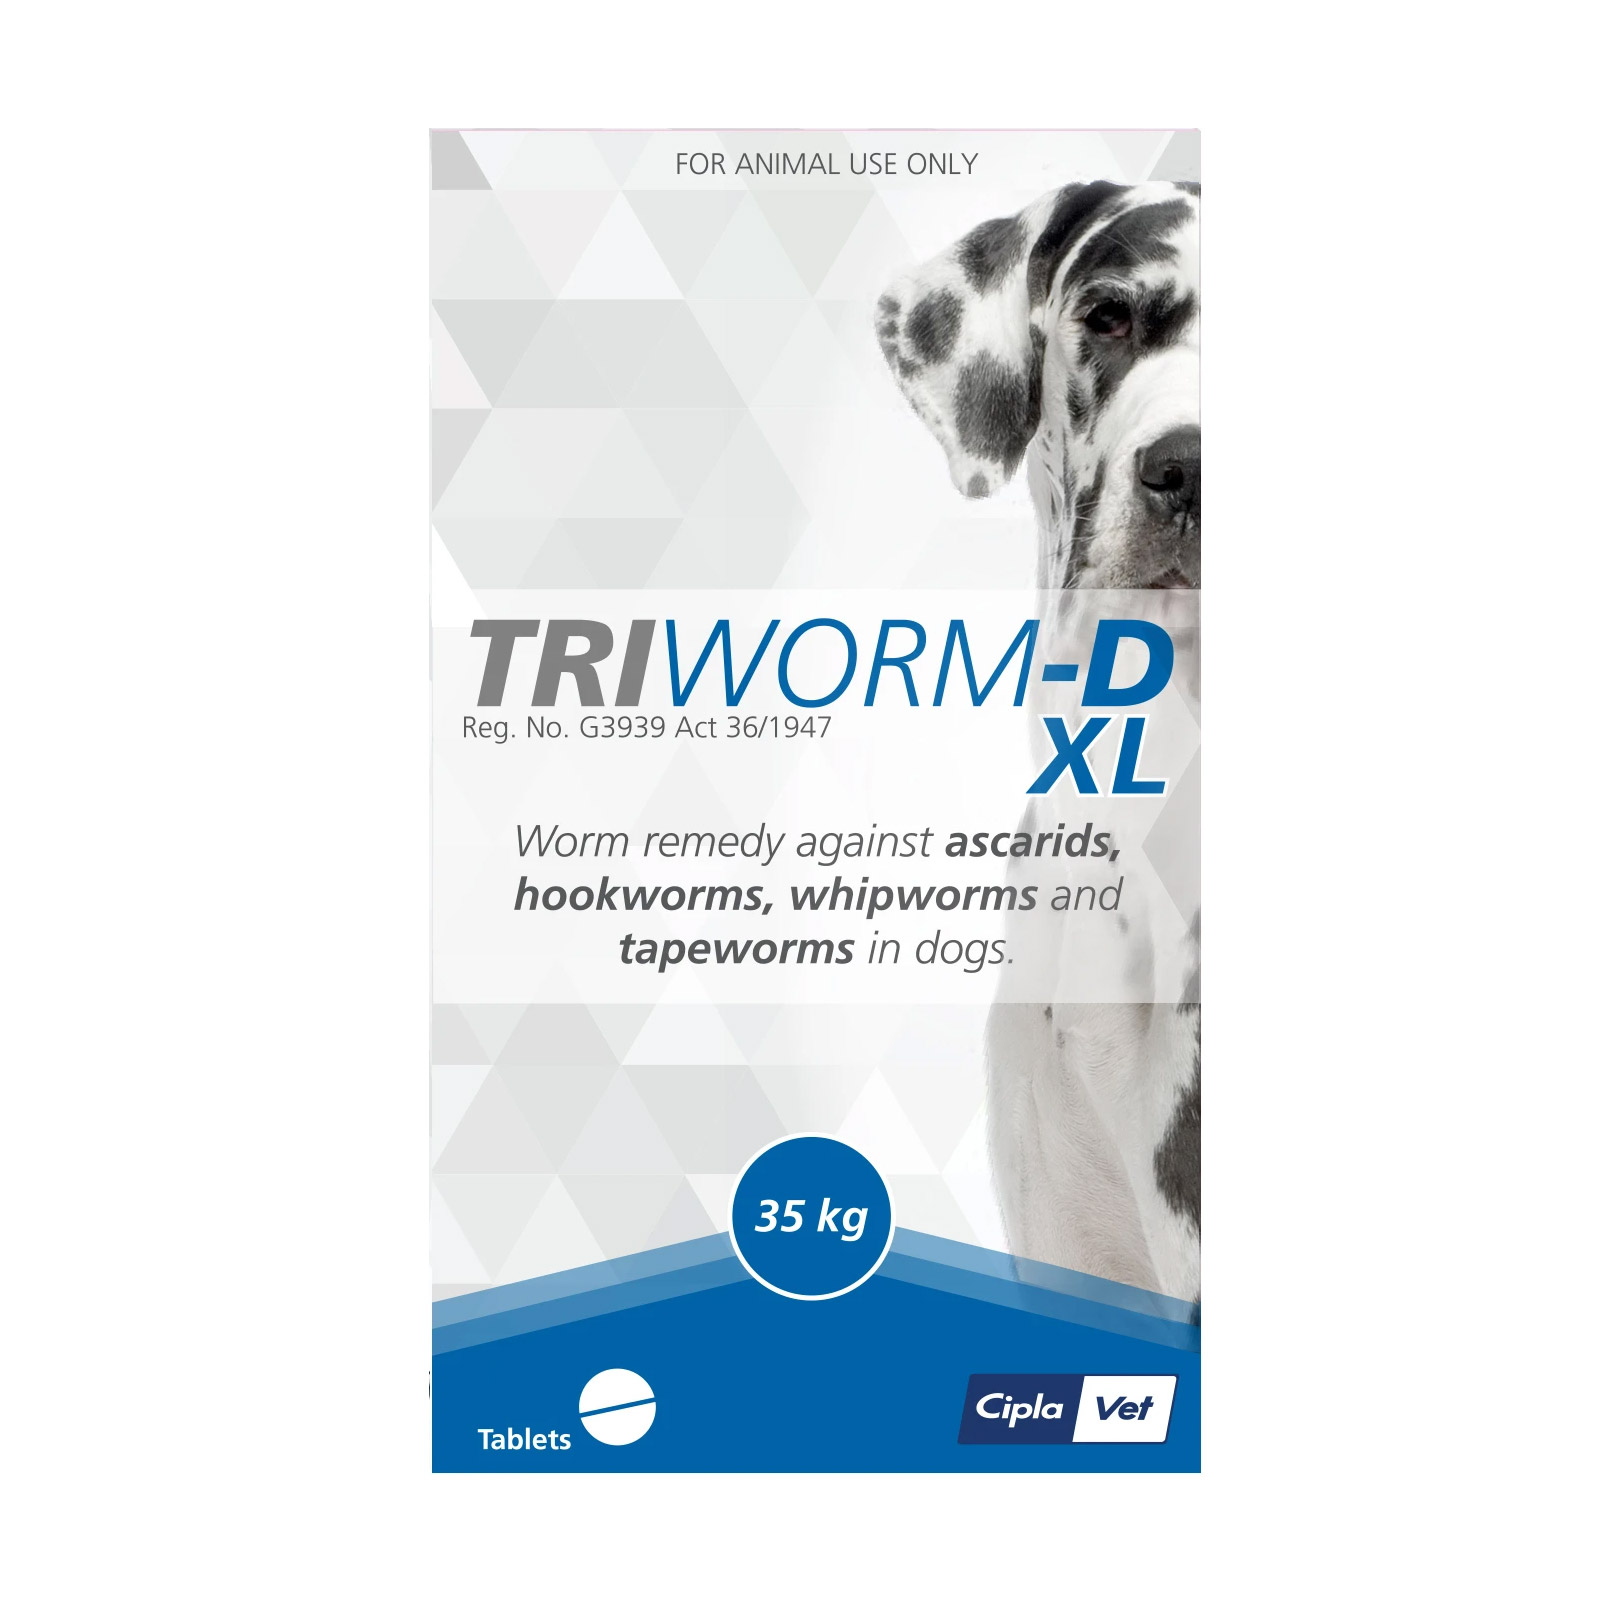 Triworm-D Dewormer For Large Dogs (35kg) 4 Tablets
